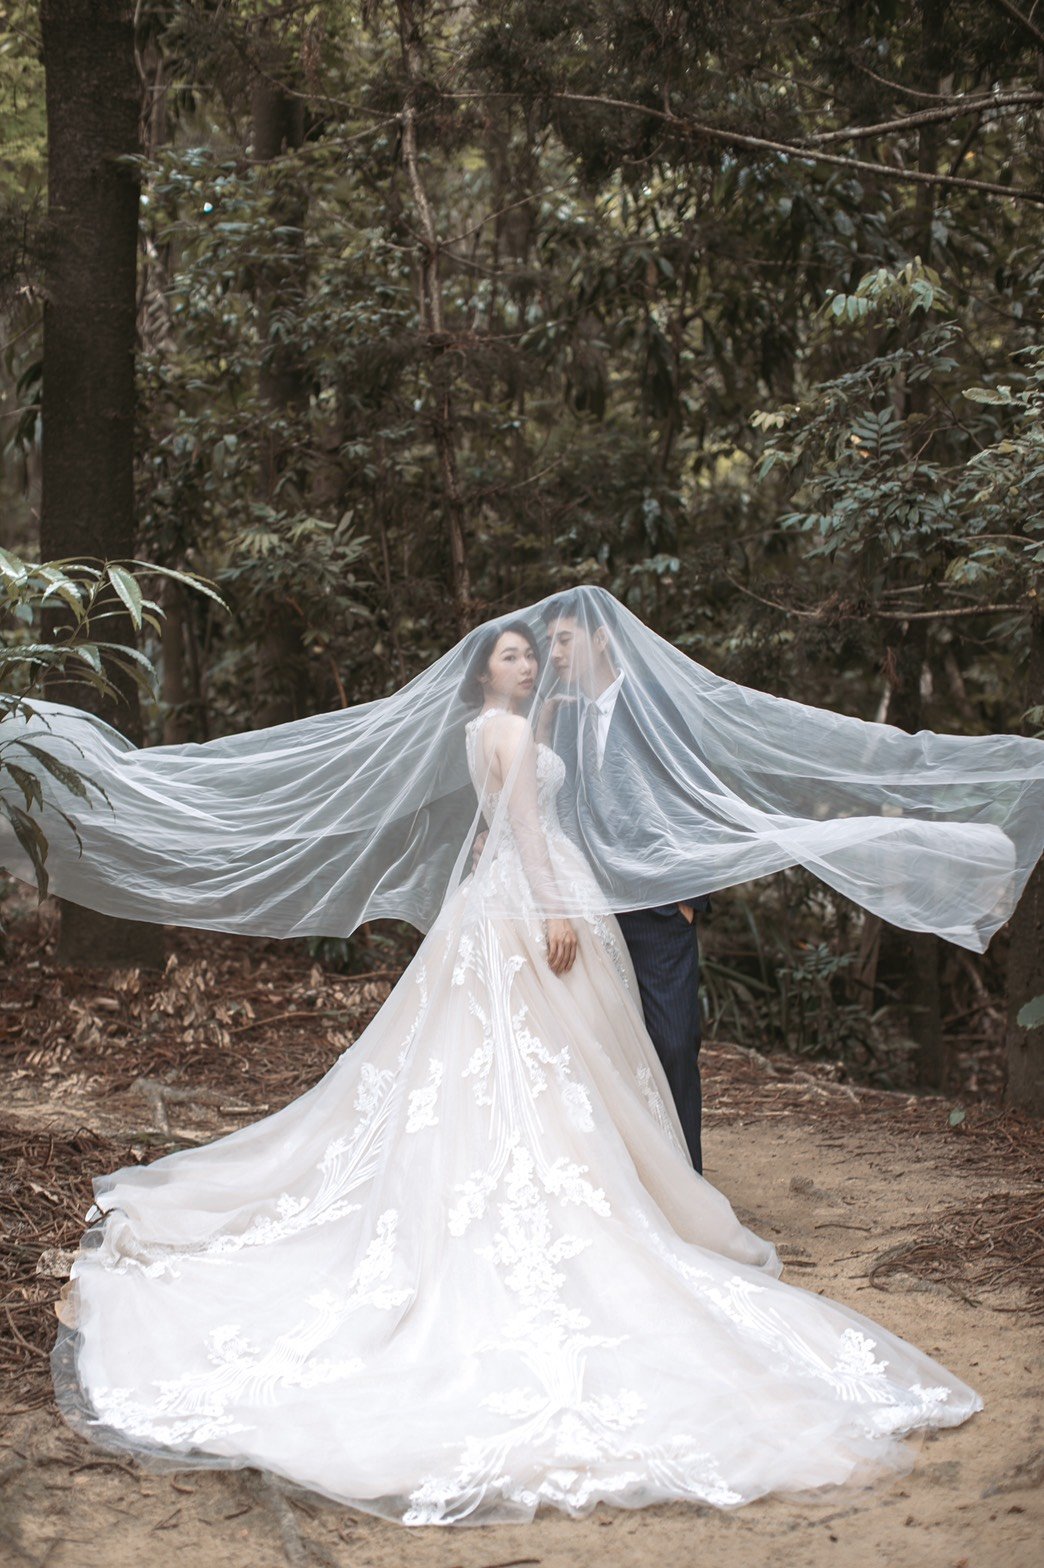 嘉義紐約紐約 - 婚紗攝影分享-婚禮廠商評價